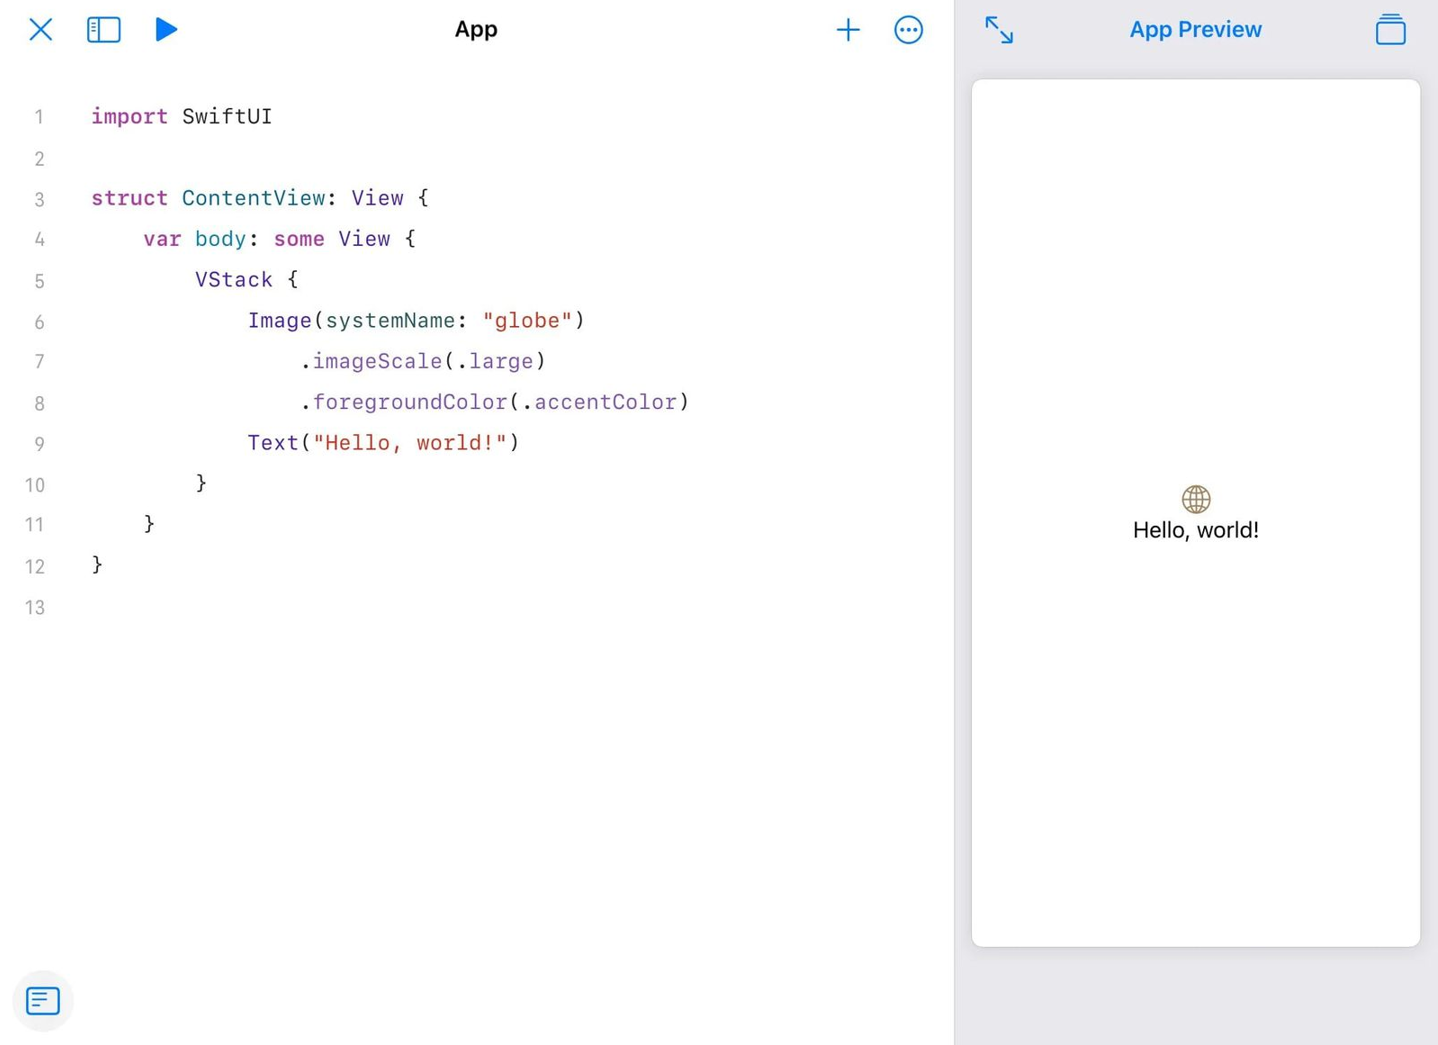 无需 Xcode，iPad 也能包办开发、提交 Swift 应用的全流程